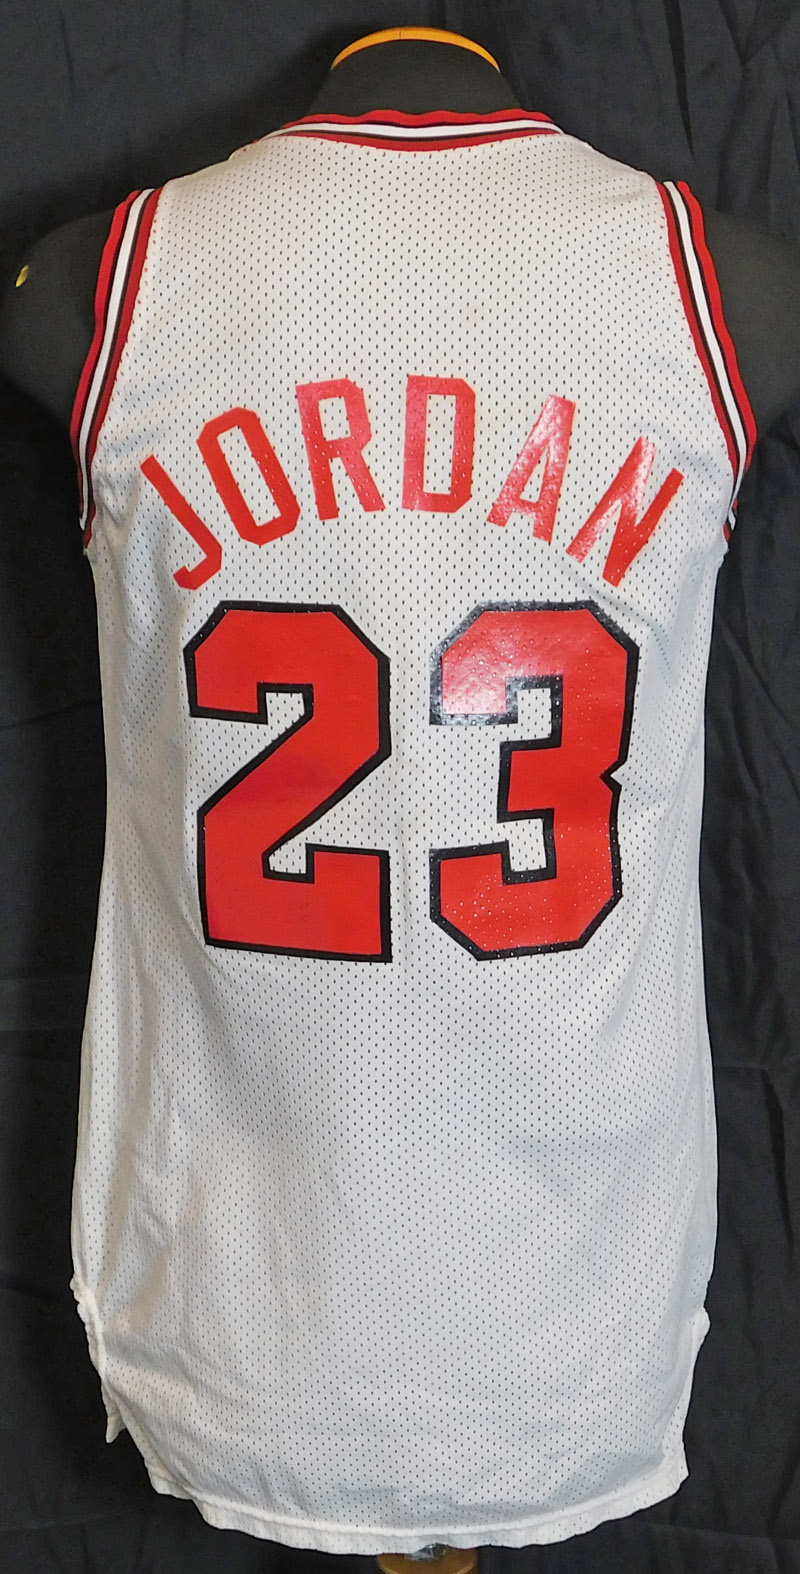 1987-88 Michael Jordan Game-Used Bulls Uniform – Memorabilia Expert